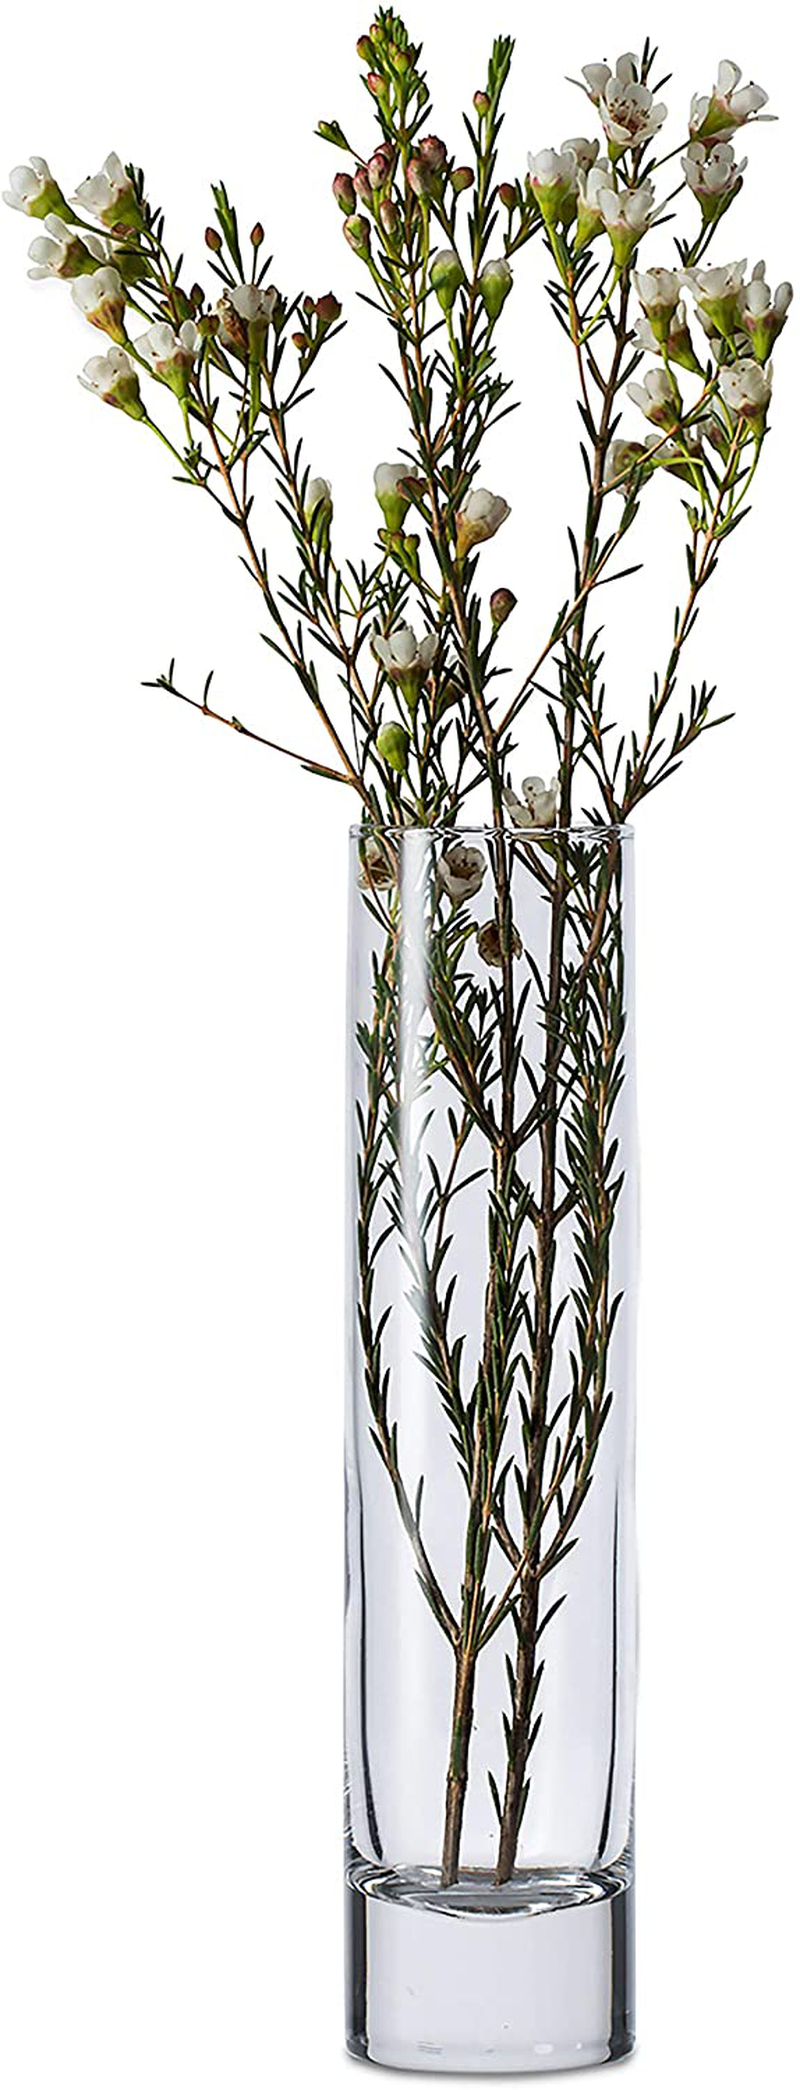 Libbey Cylinder Bud Vases, 7.5-inch, Set of 12 Home & Garden > Decor > Vases Libbey Default Title  